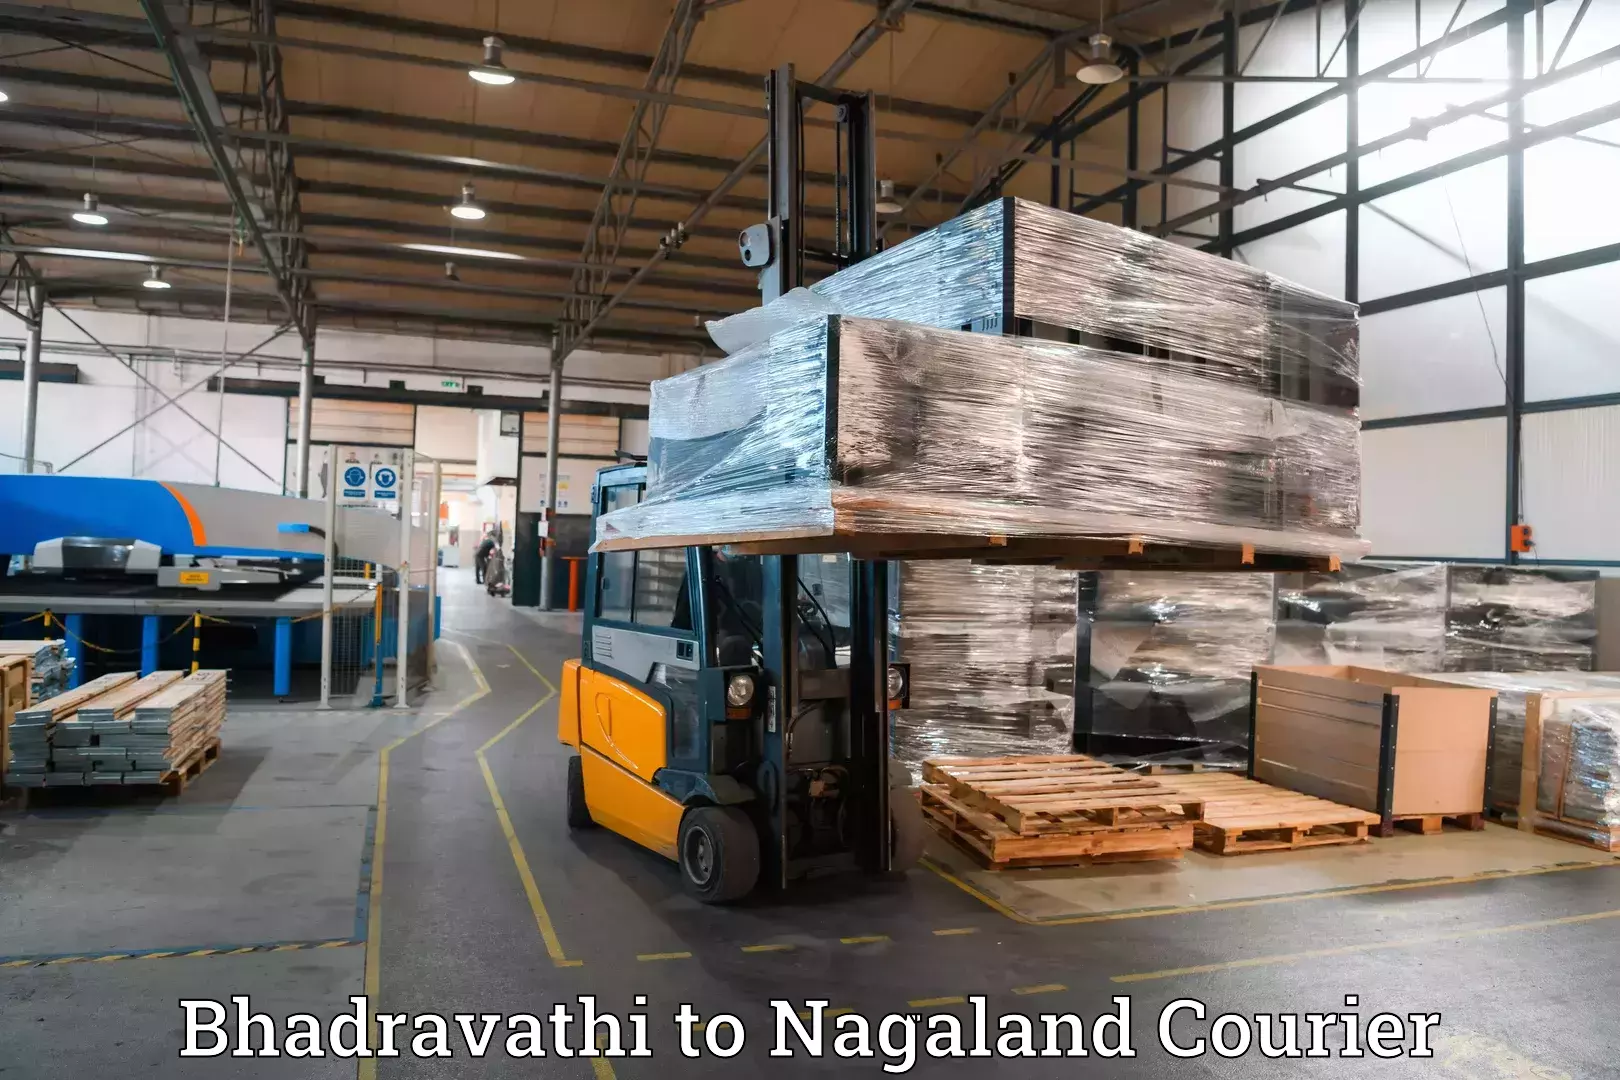 Luggage transport solutions Bhadravathi to Nagaland